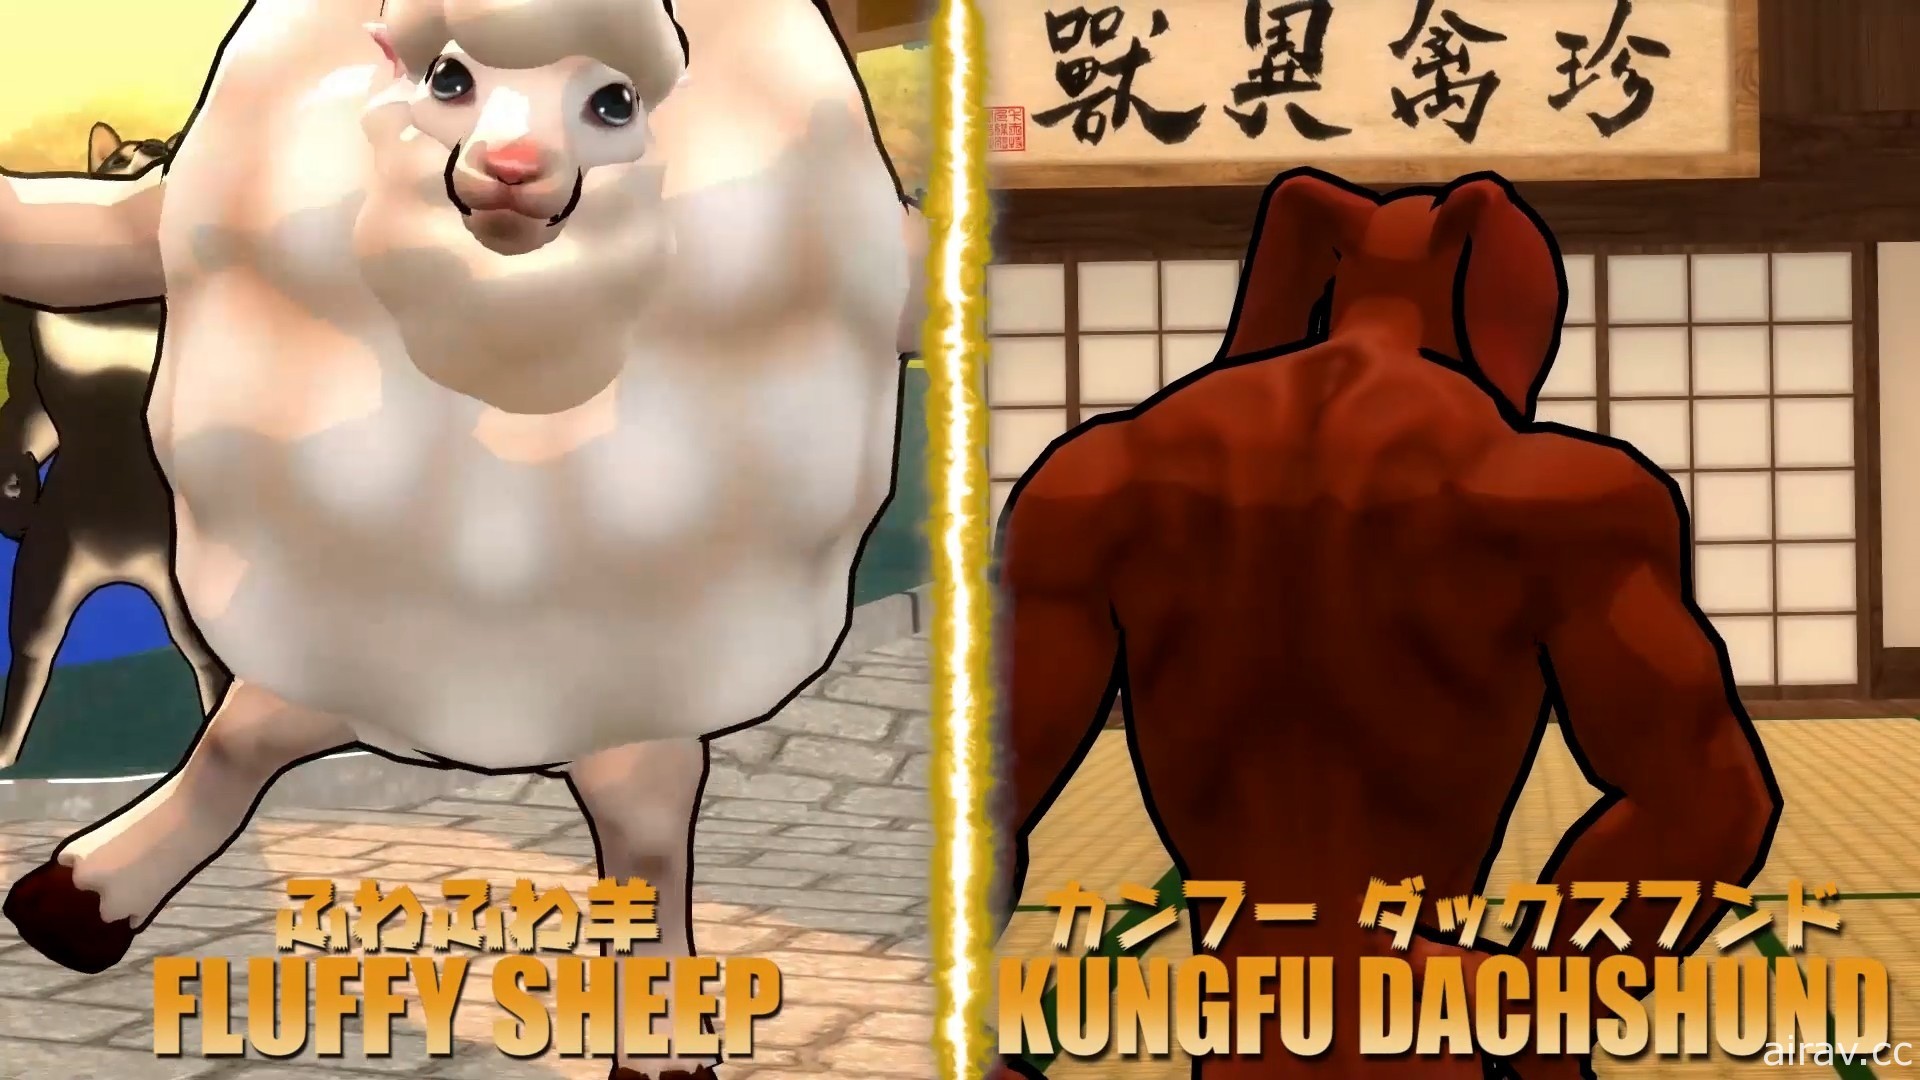 《動物之鬪》PC 版釋出免費更新 新角色「功夫臘腸」「咩噗羊」登場